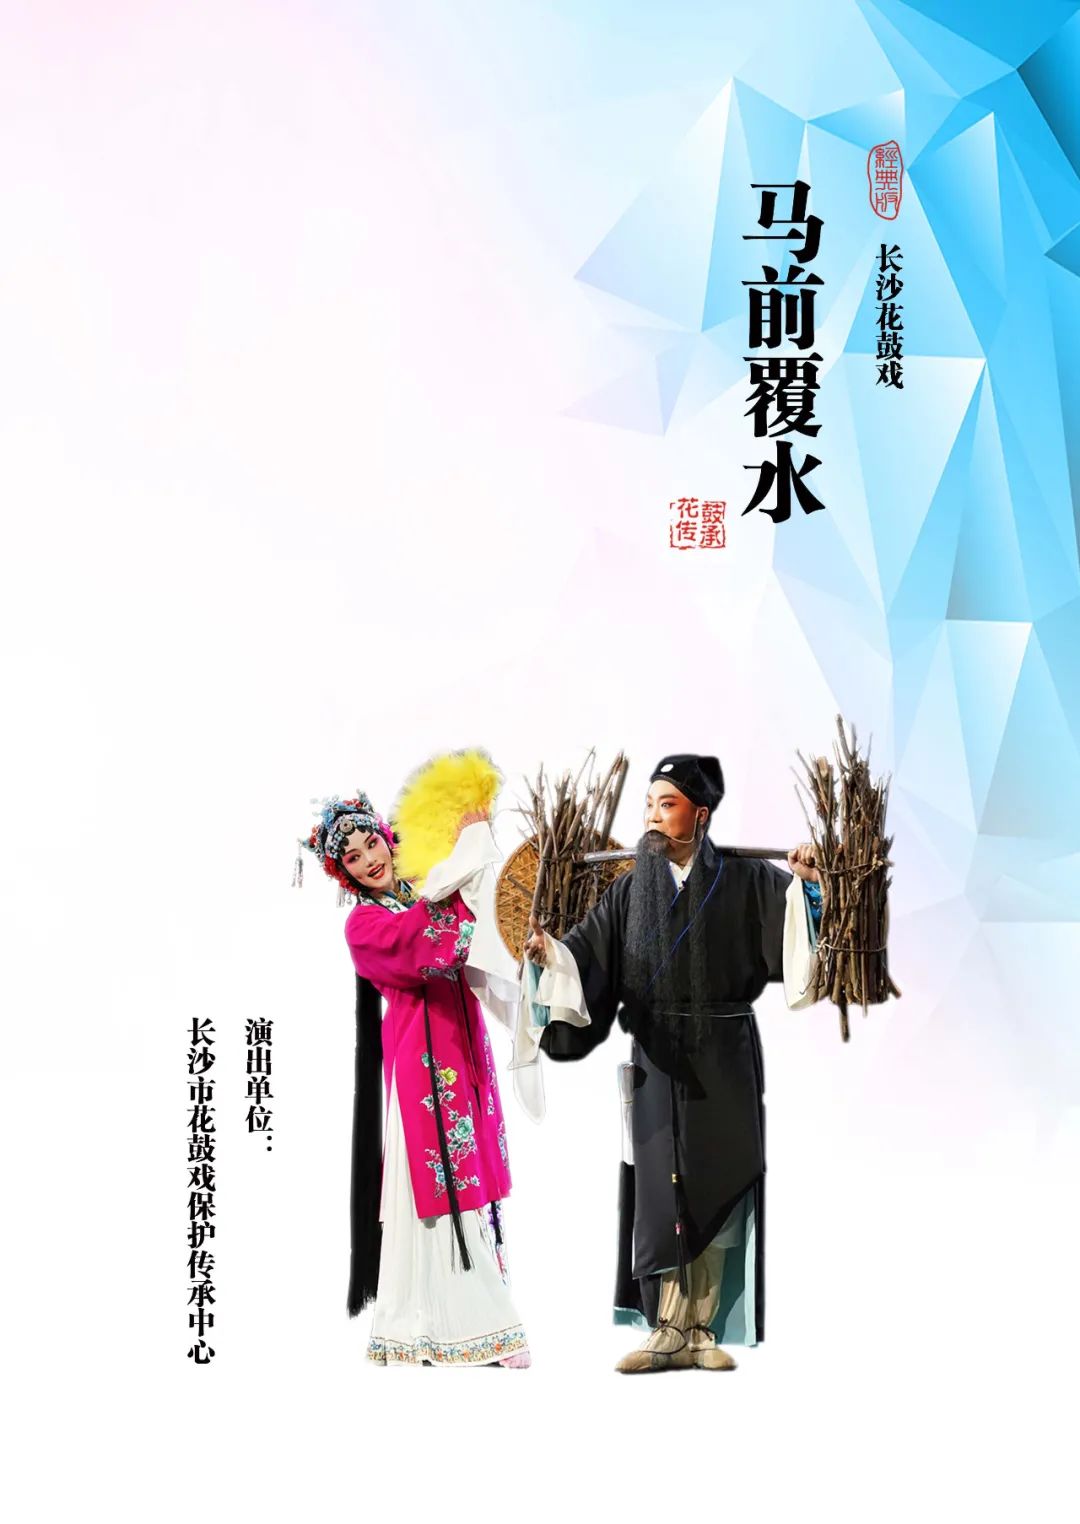 【传统戏曲】花鼓戏《马前覆水》参加第七届湖南艺术节复排传统经典